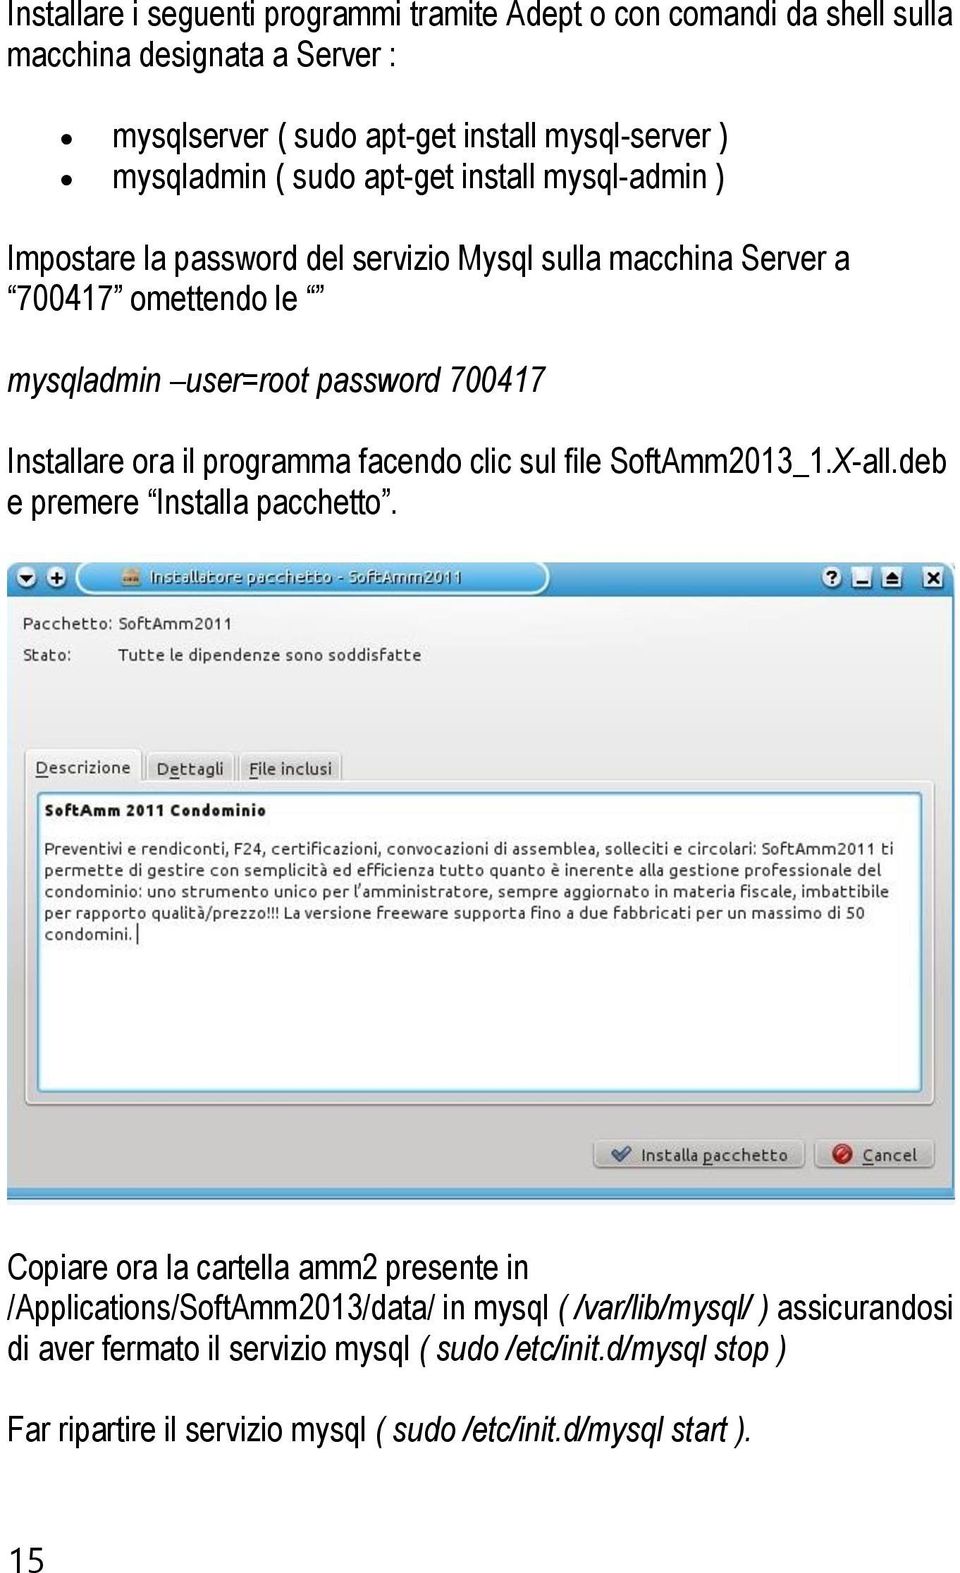 ora il programma facendo clic sul file SoftAmm2013_1.X-all.deb e premere Installa pacchetto.